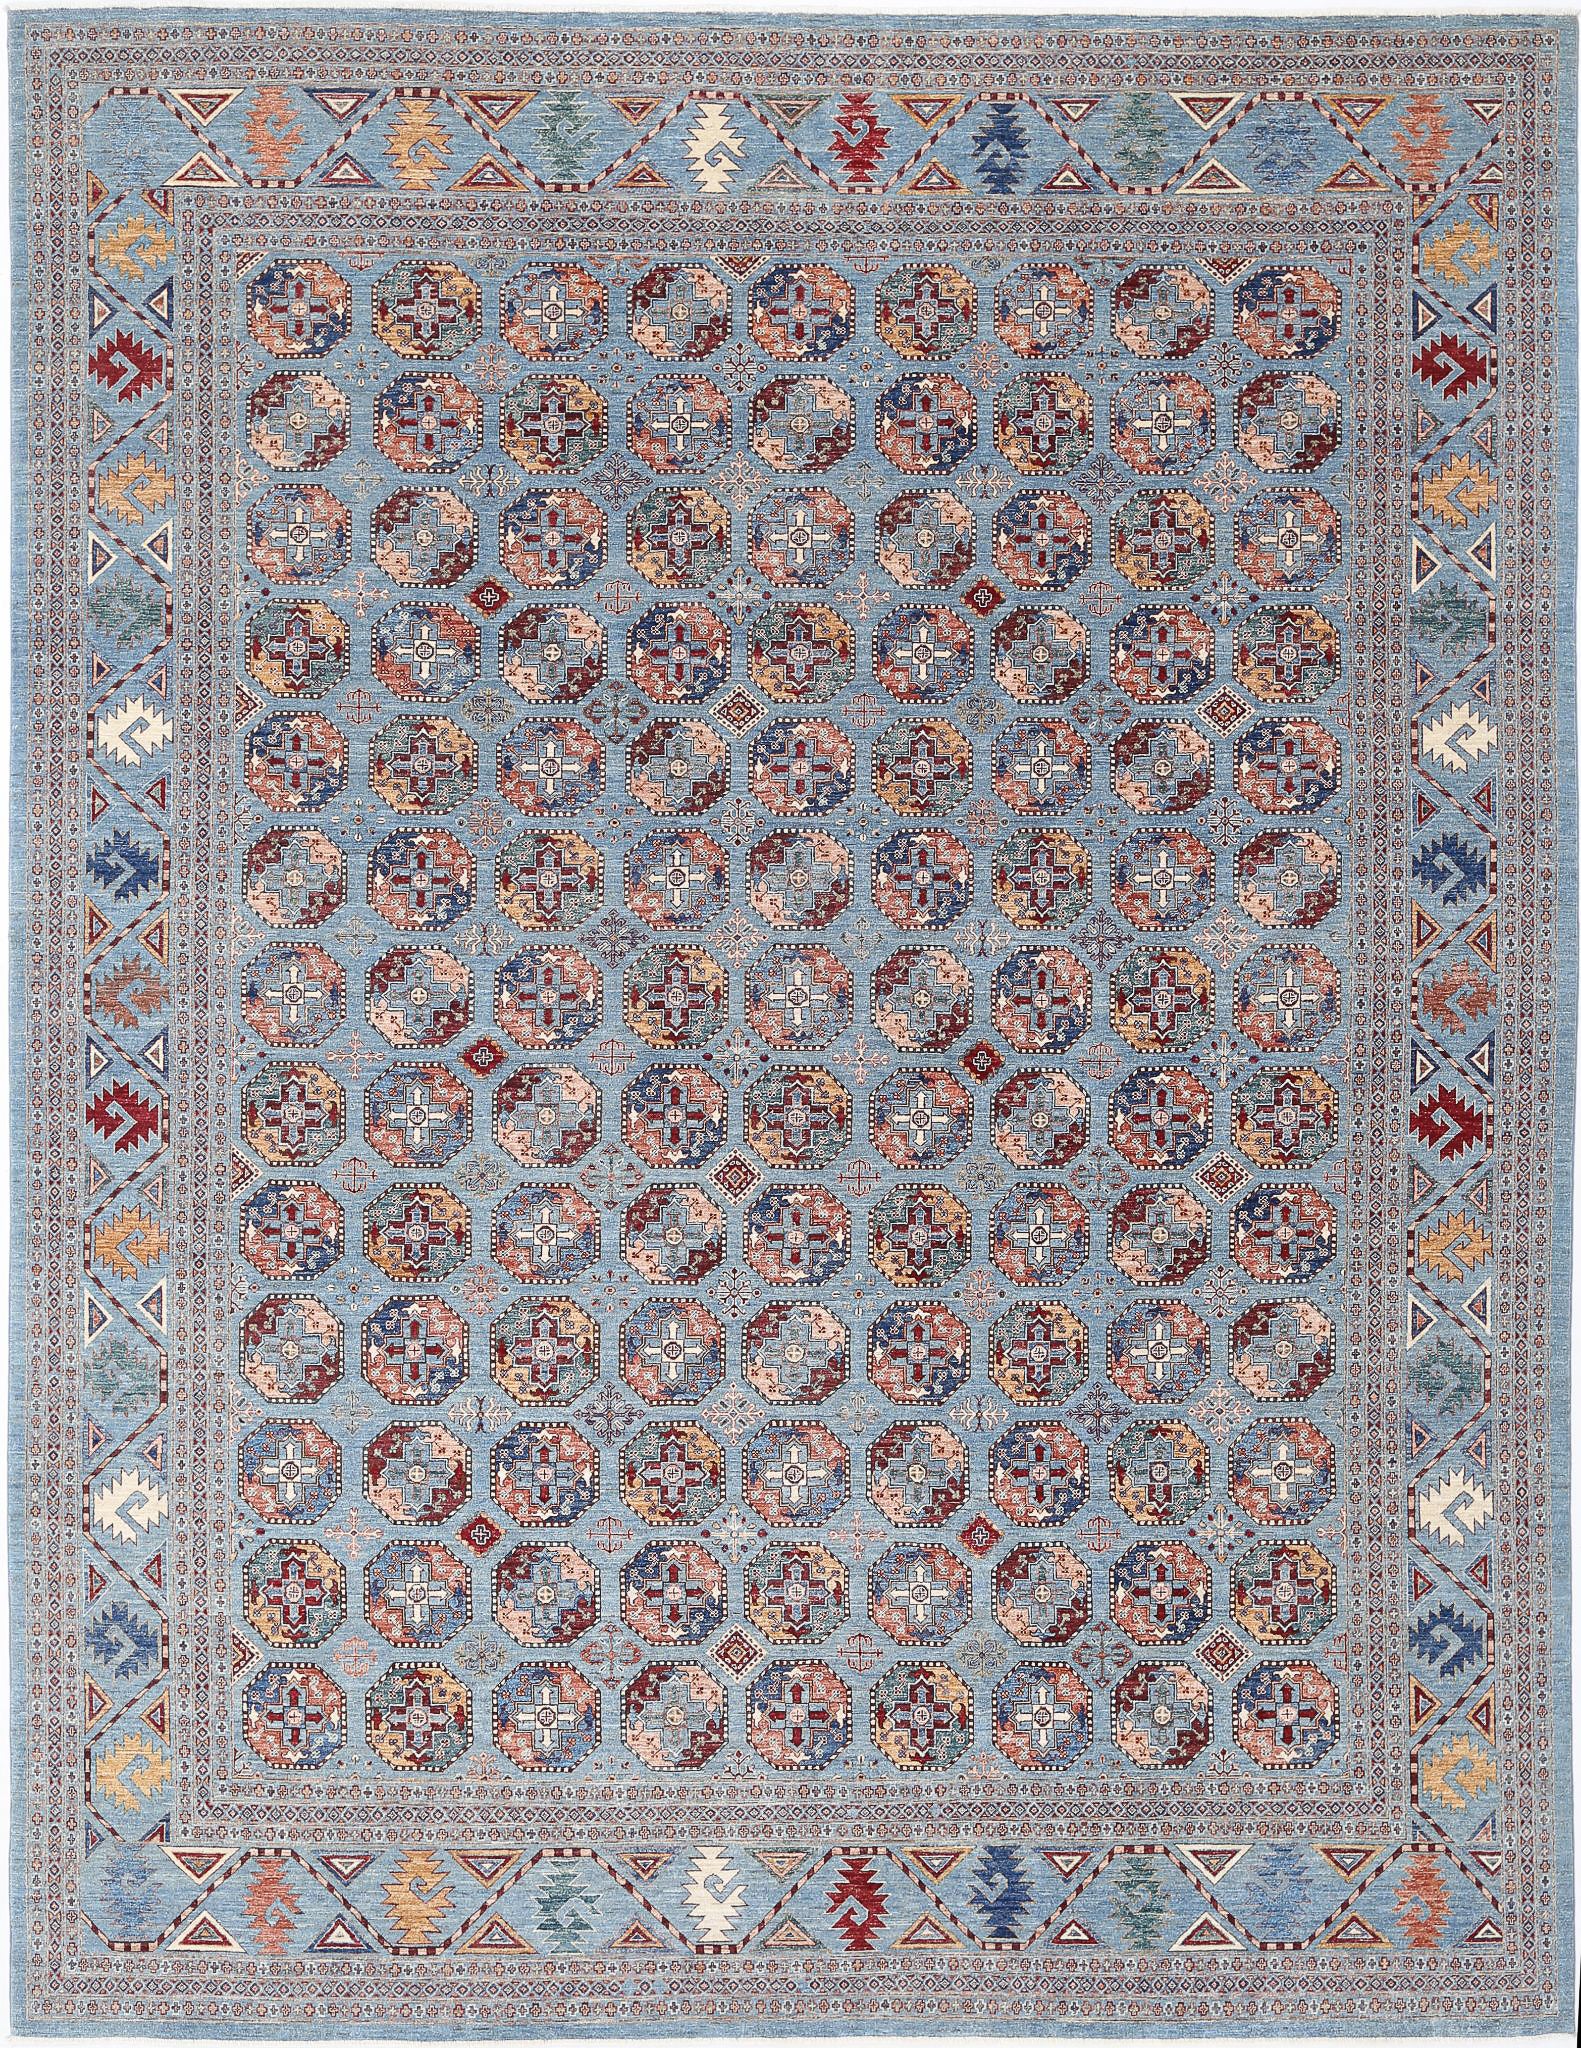 Jasmine-hand-knotted-sultani-wool-rug-5024941.jpg